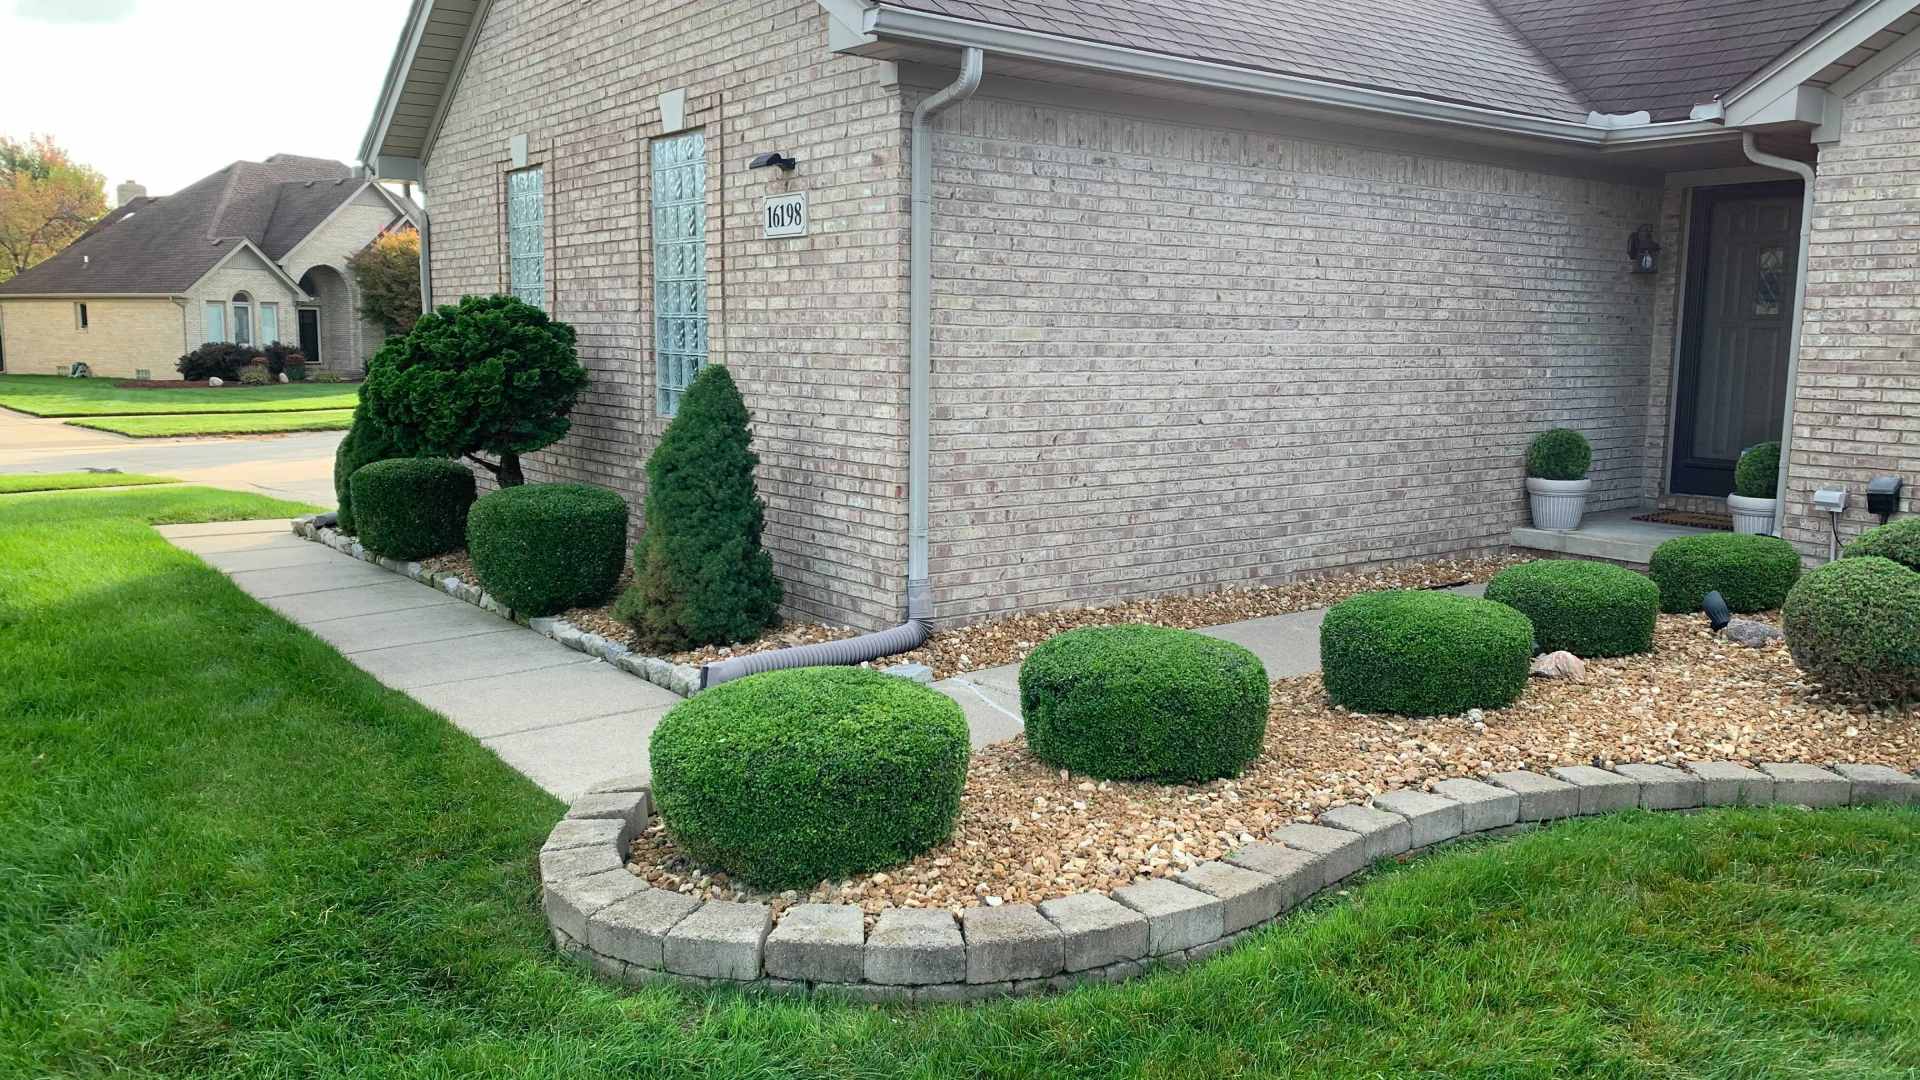 Trimmed shrubs for front landscape bed in Roseville, MI.